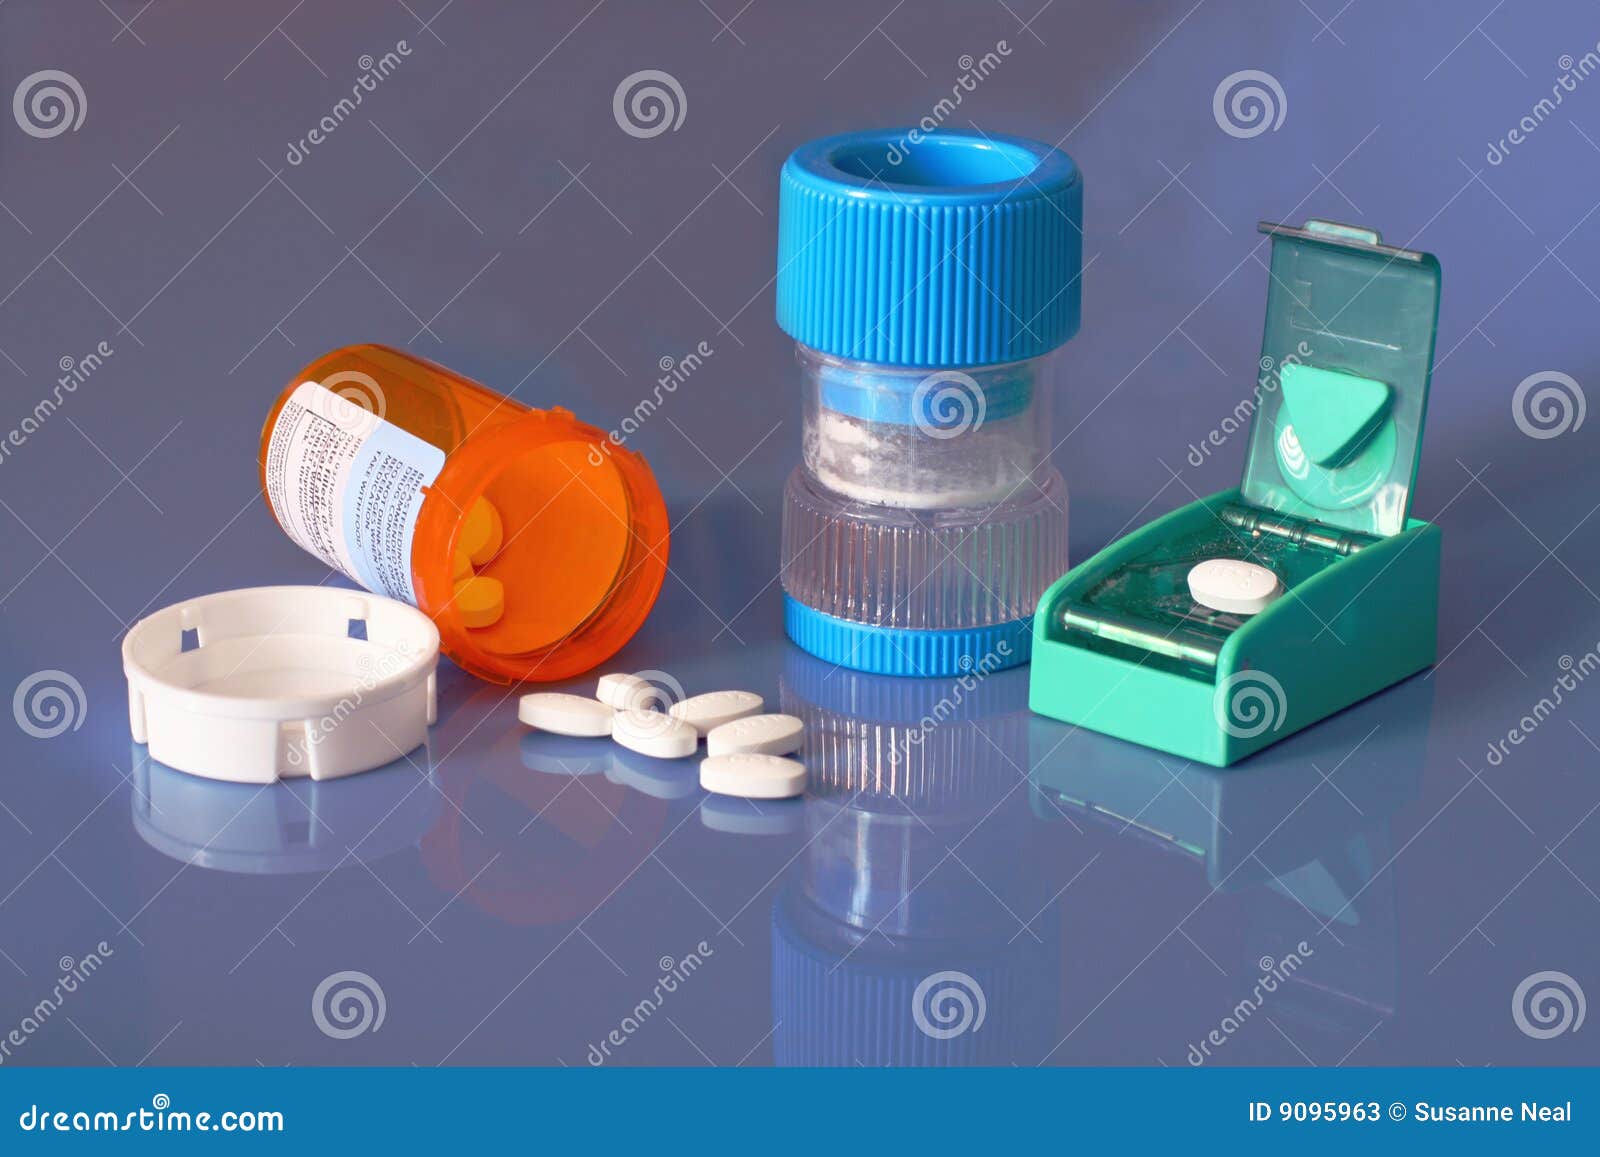 prescription bottle, pills, pill crusher, splitter